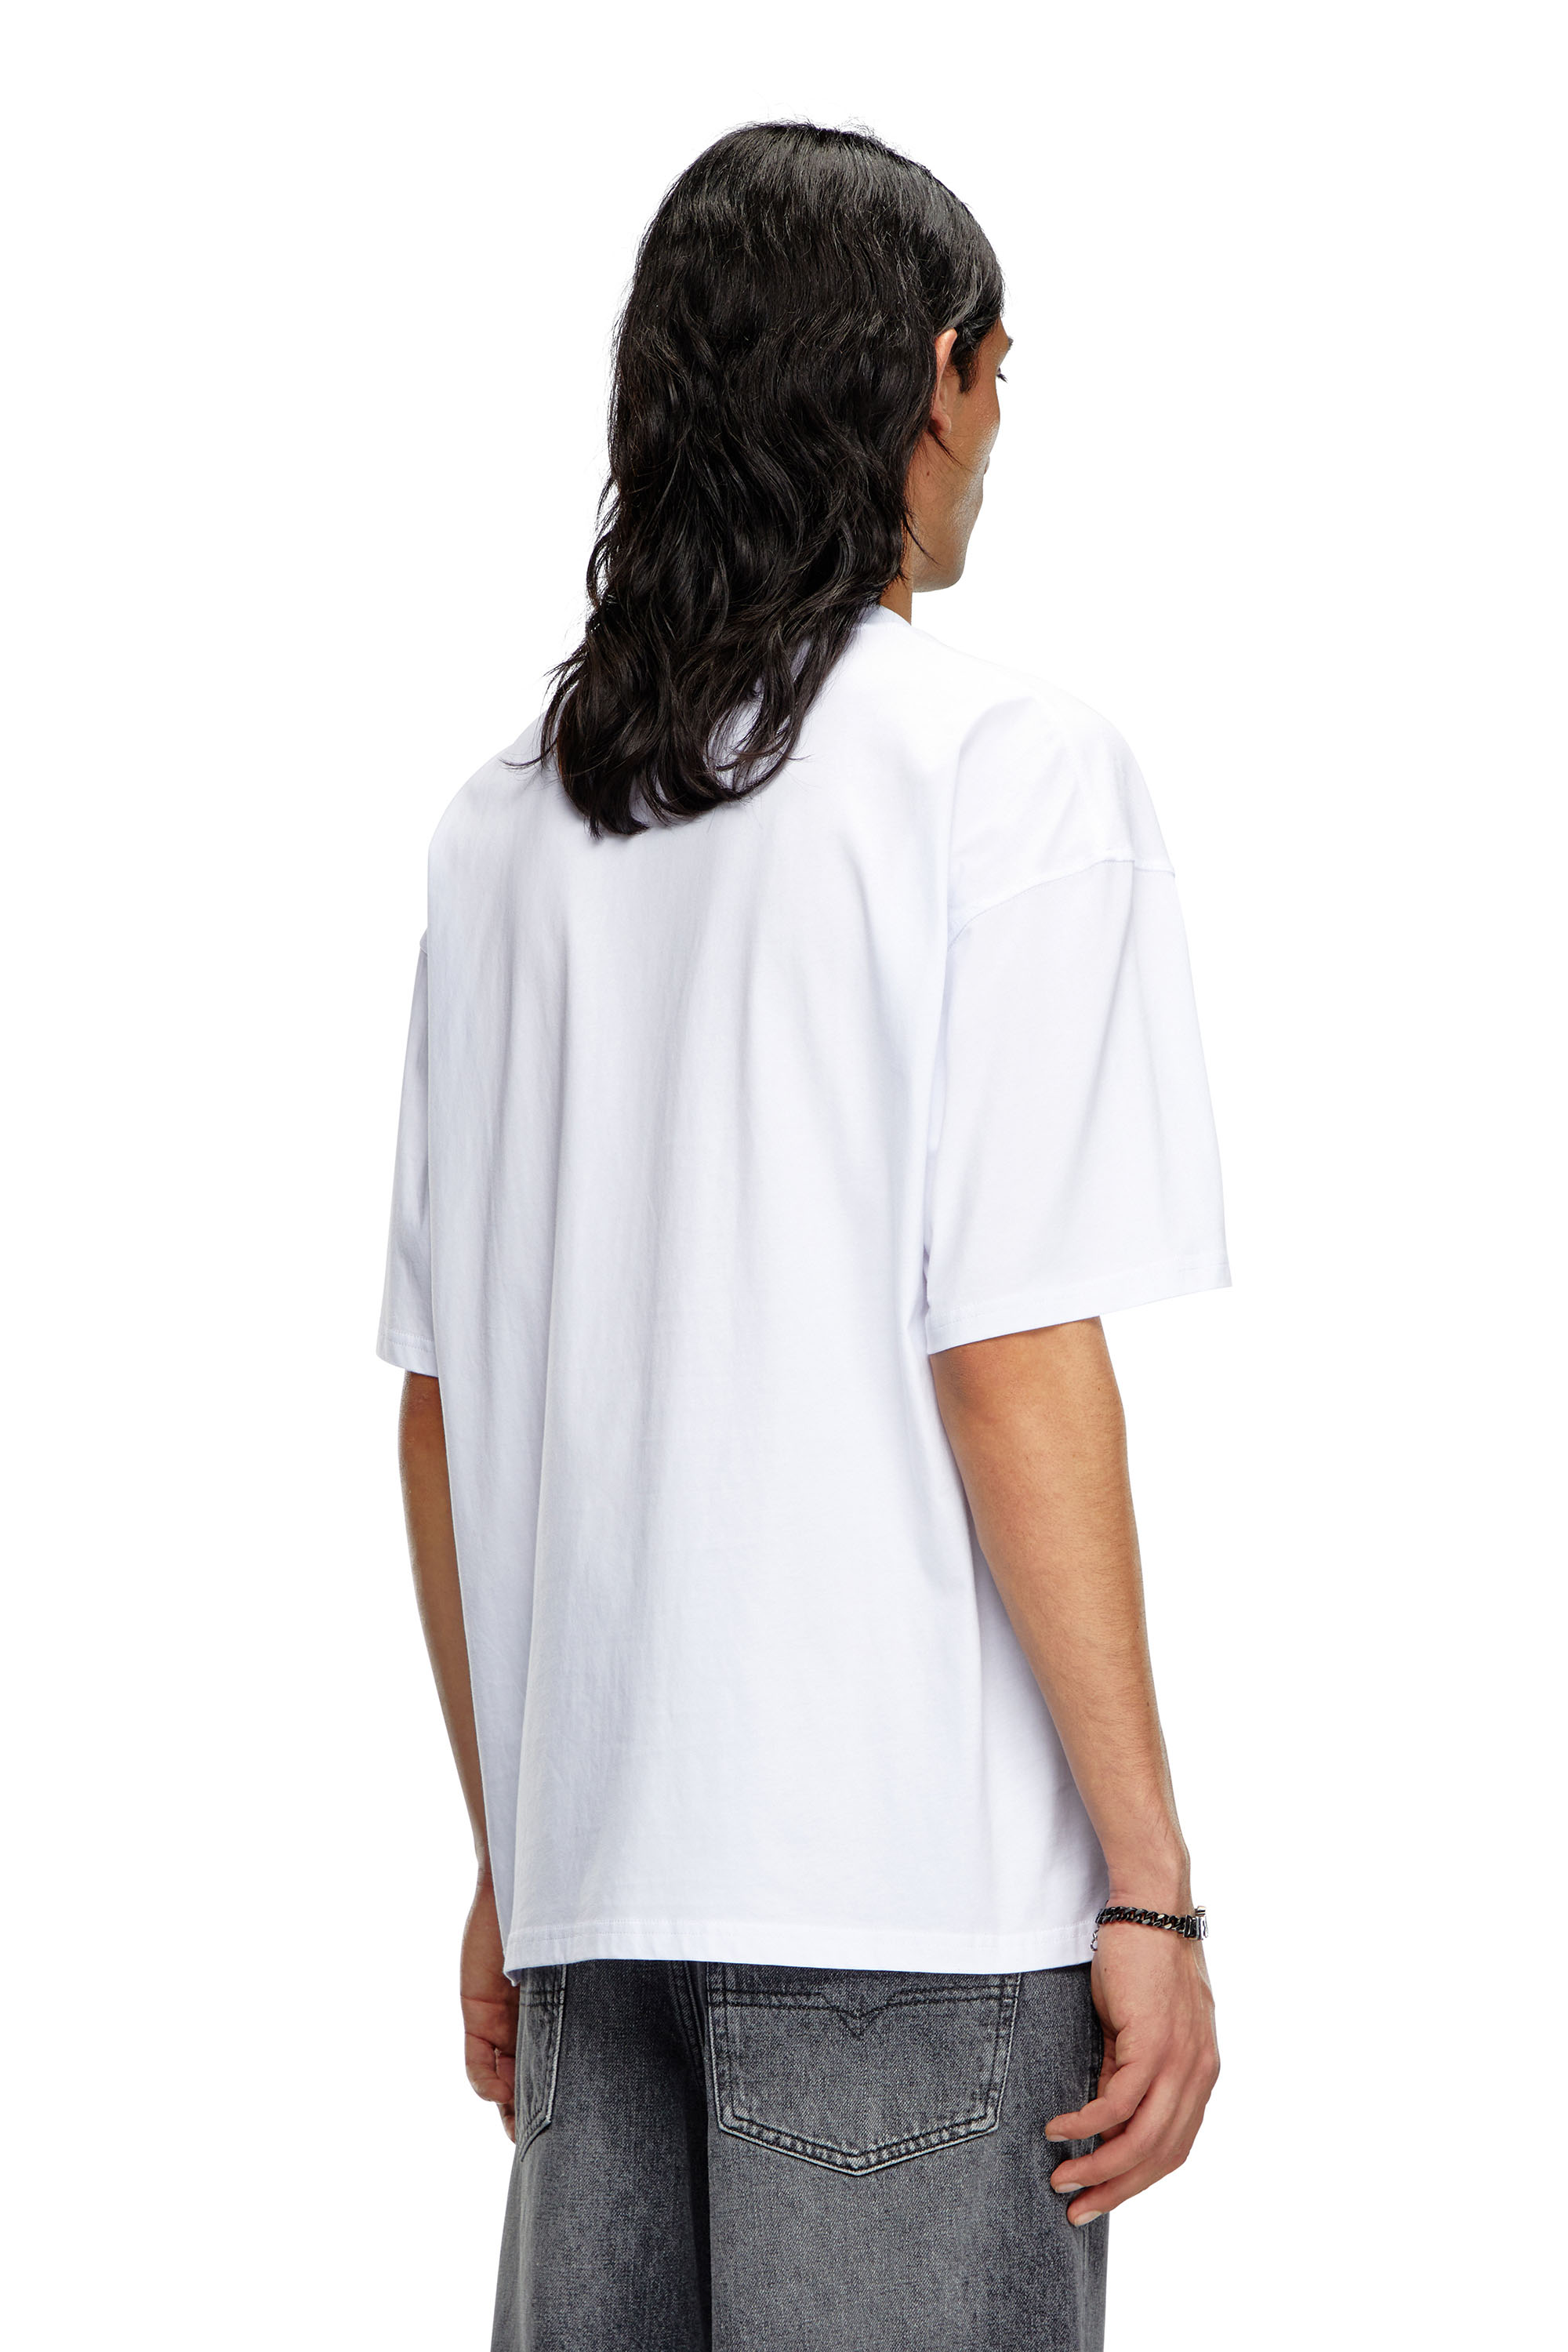 Diesel - T-BOXT-OD, Unisex Camiseta con Oval D bordado in Blanco - Image 3